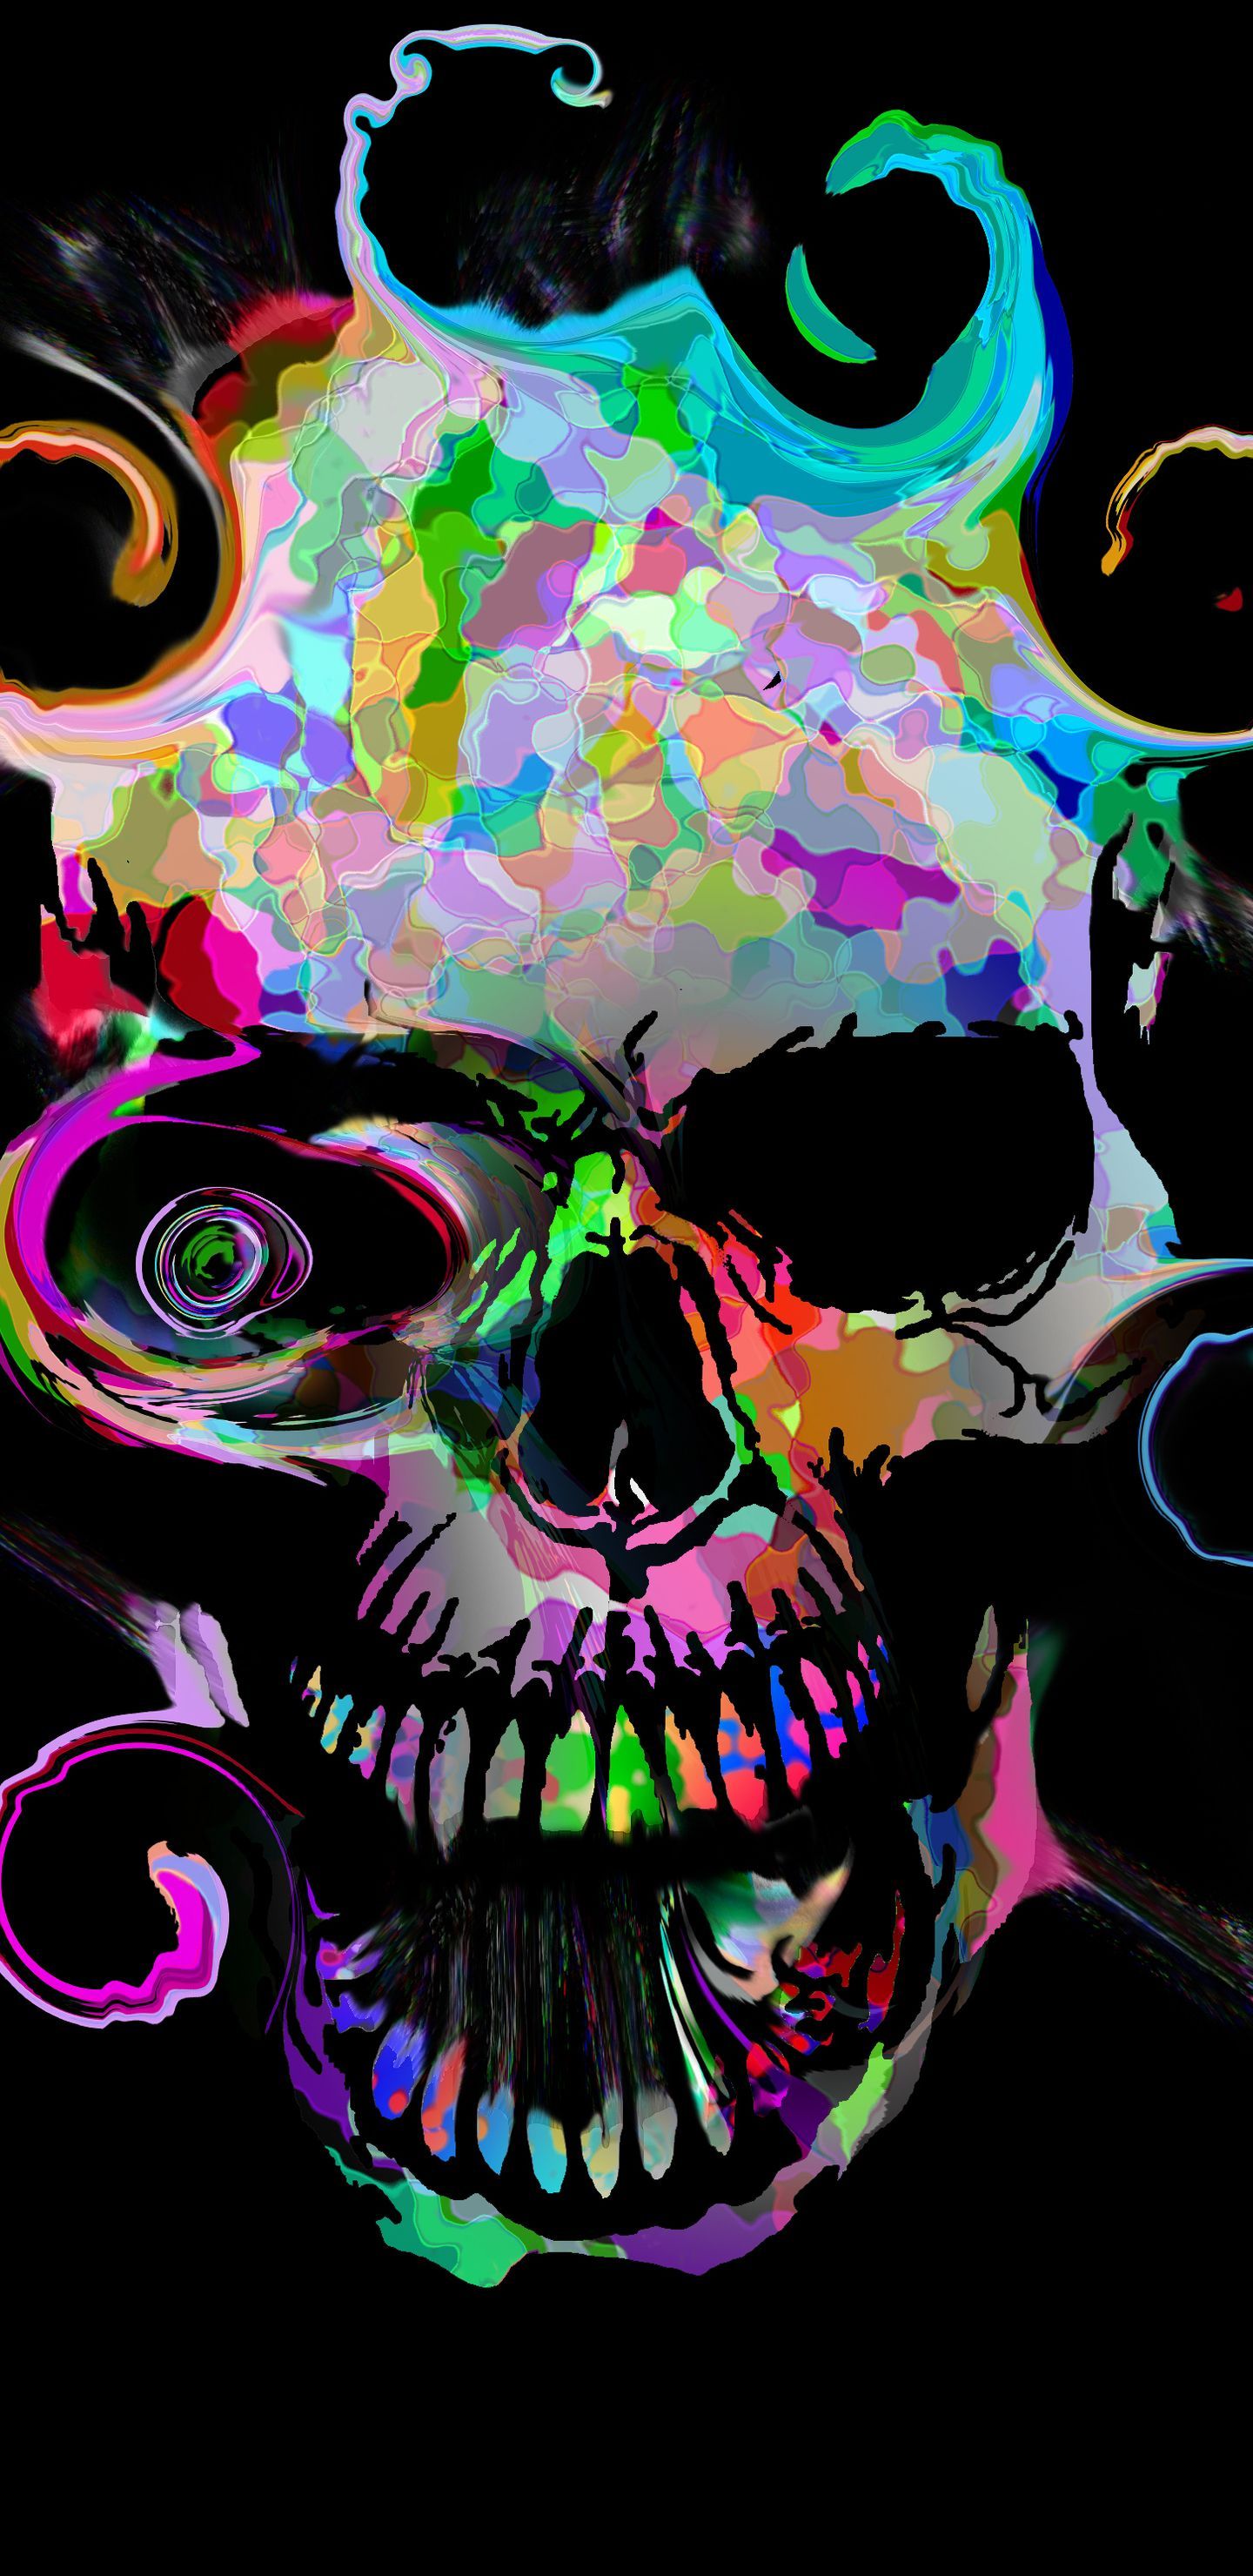 Skull Samsung Galaxy Wallpaper Free Skull Samsung Galaxy Background